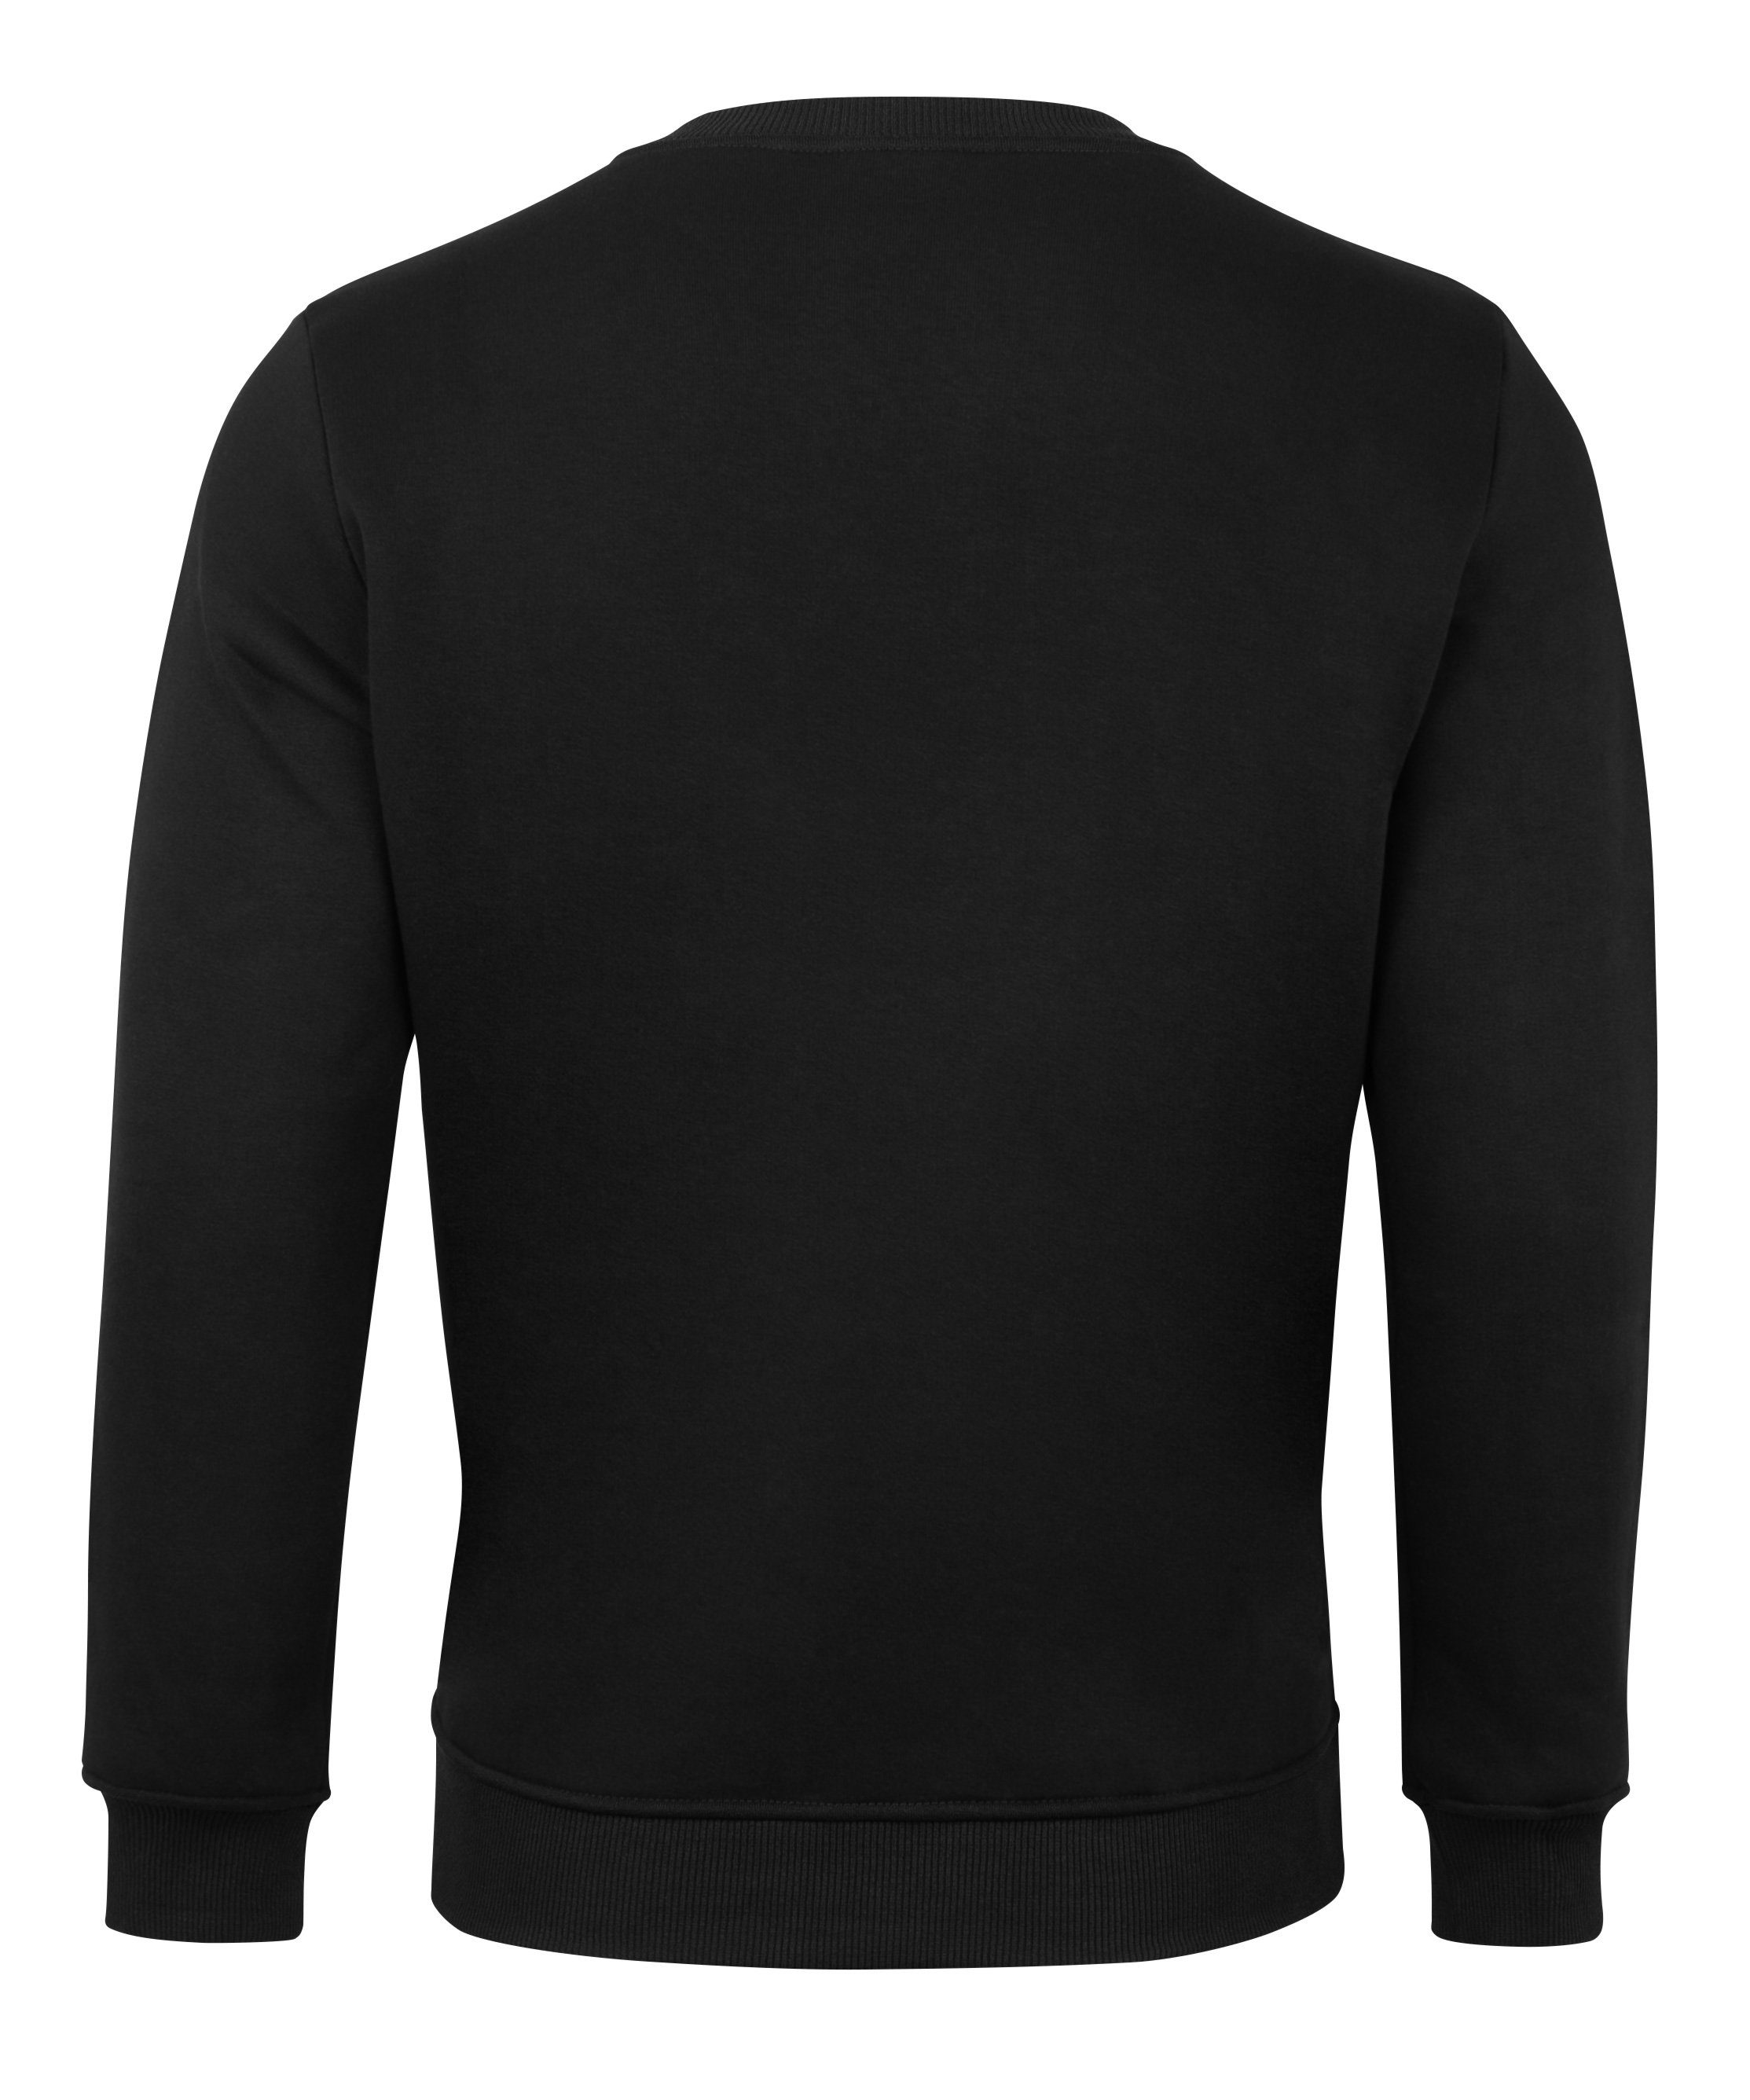 Innen angerauht Sweatshirt Soul® Schwarz French-Terry-Rundhals-Sweatshirt, Fleece weichem, mit gerauhtem Stark